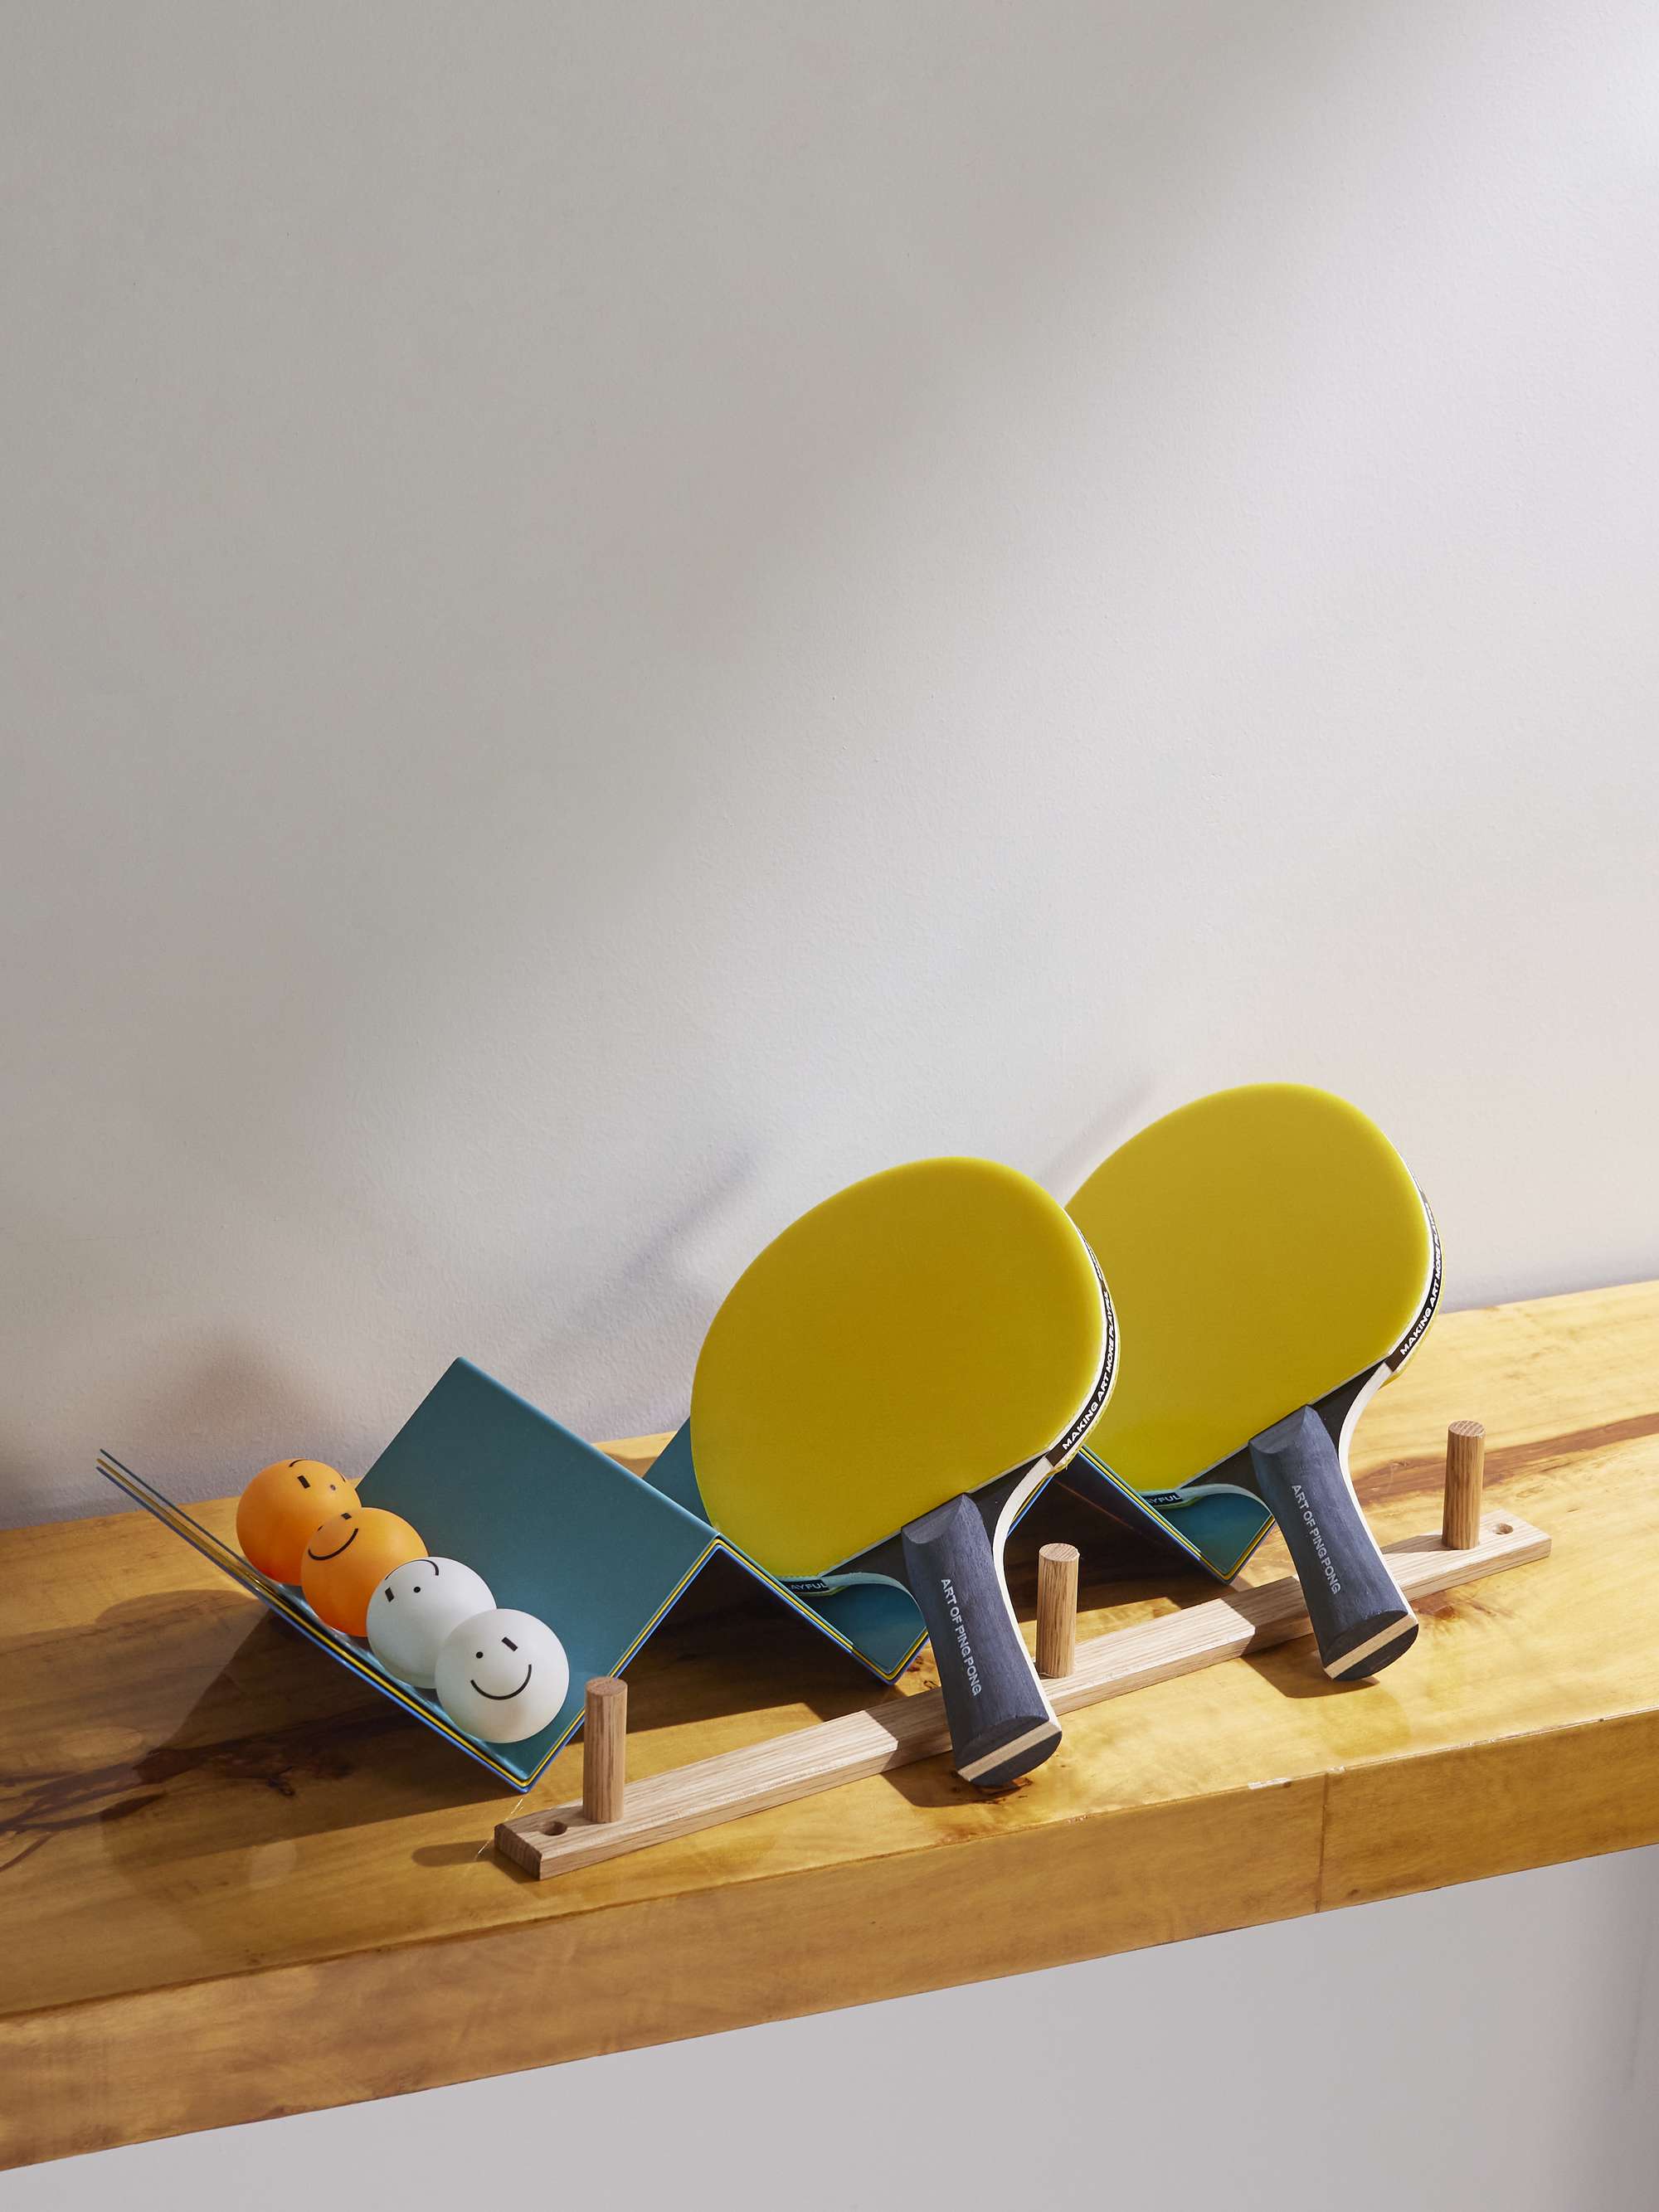 THE ART OF PING PONG ArtNet Ping Pong Set for Men